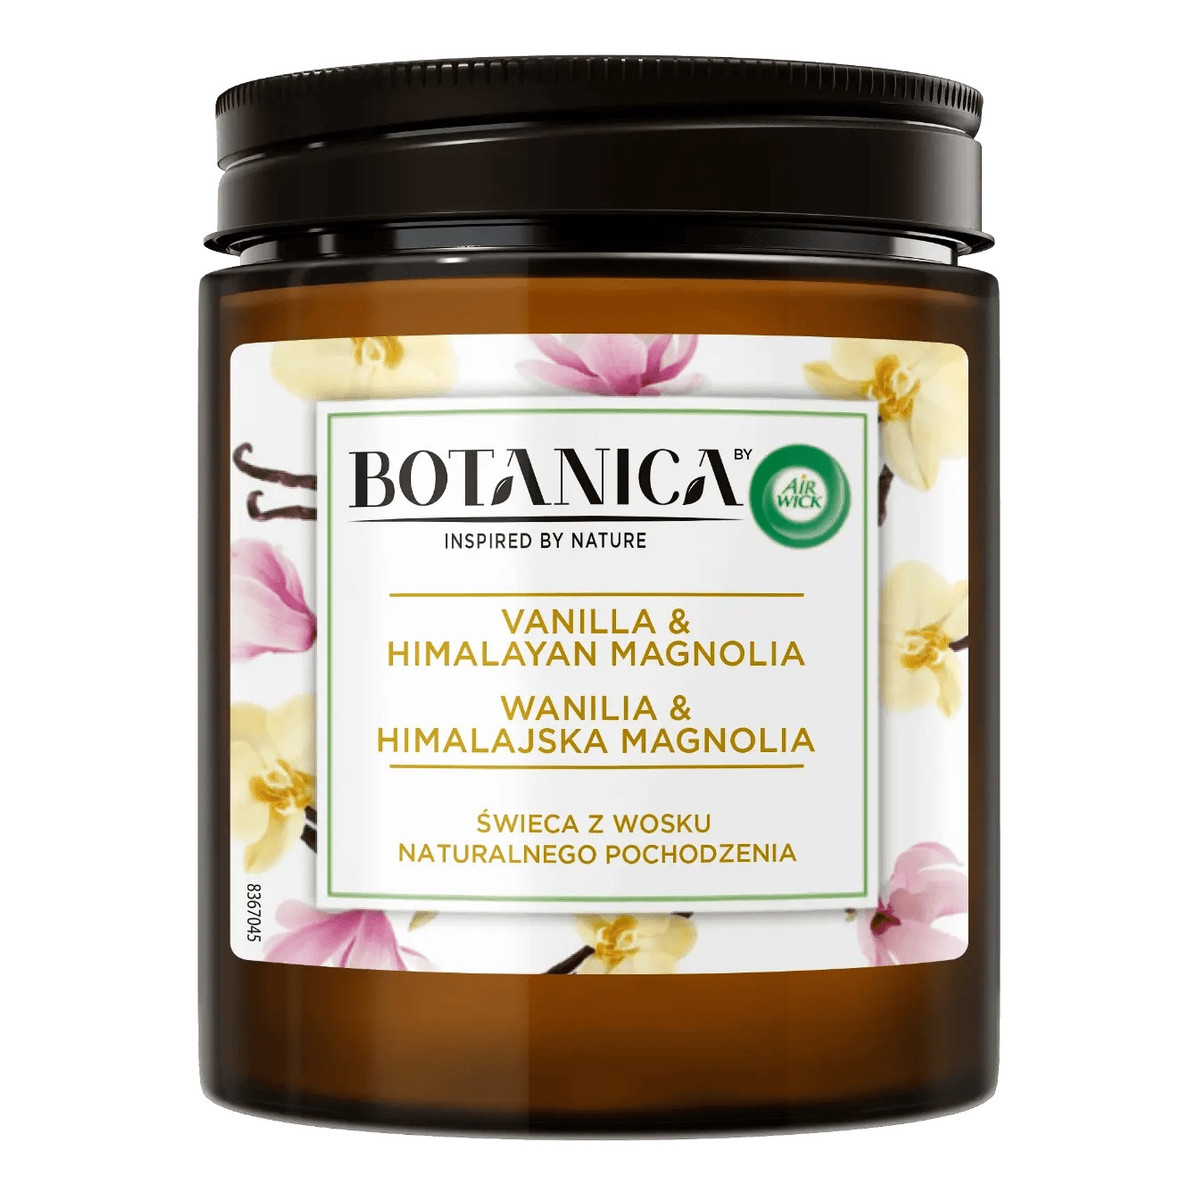 Air Wick Botanica świeca z wosku naturalnego pochodzenia wanilia & himalajska magnolia 205g